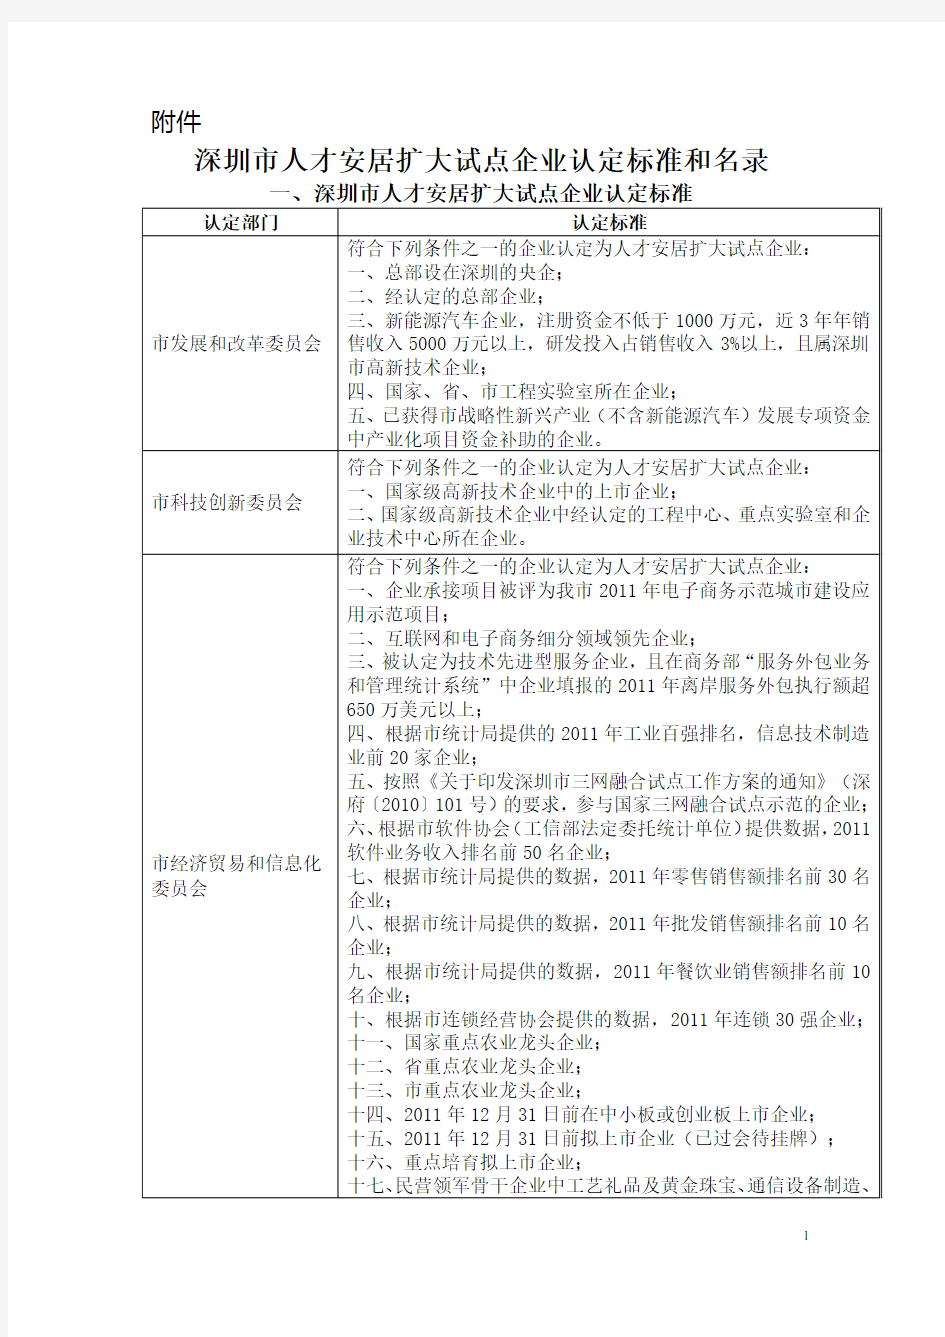 深圳市人才安居扩大试点企业认定标准和名录(1091家)